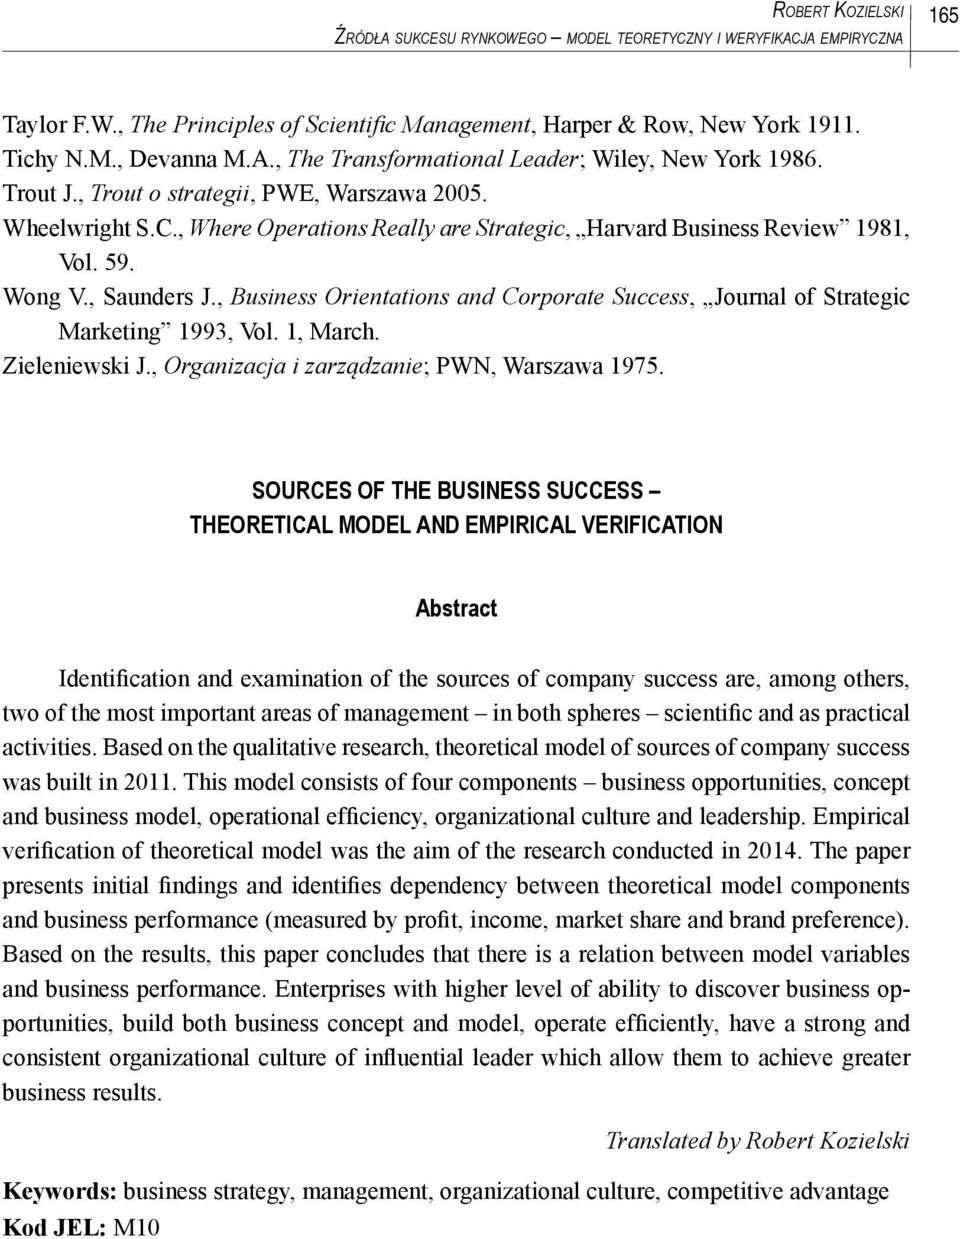 , Business Orientations and Corporate Success, Journal of Strategic Marketing 1993, Vol. 1, March. Zieleniewski J., Organizacja i zarządzanie; PWN, Warszawa 1975.